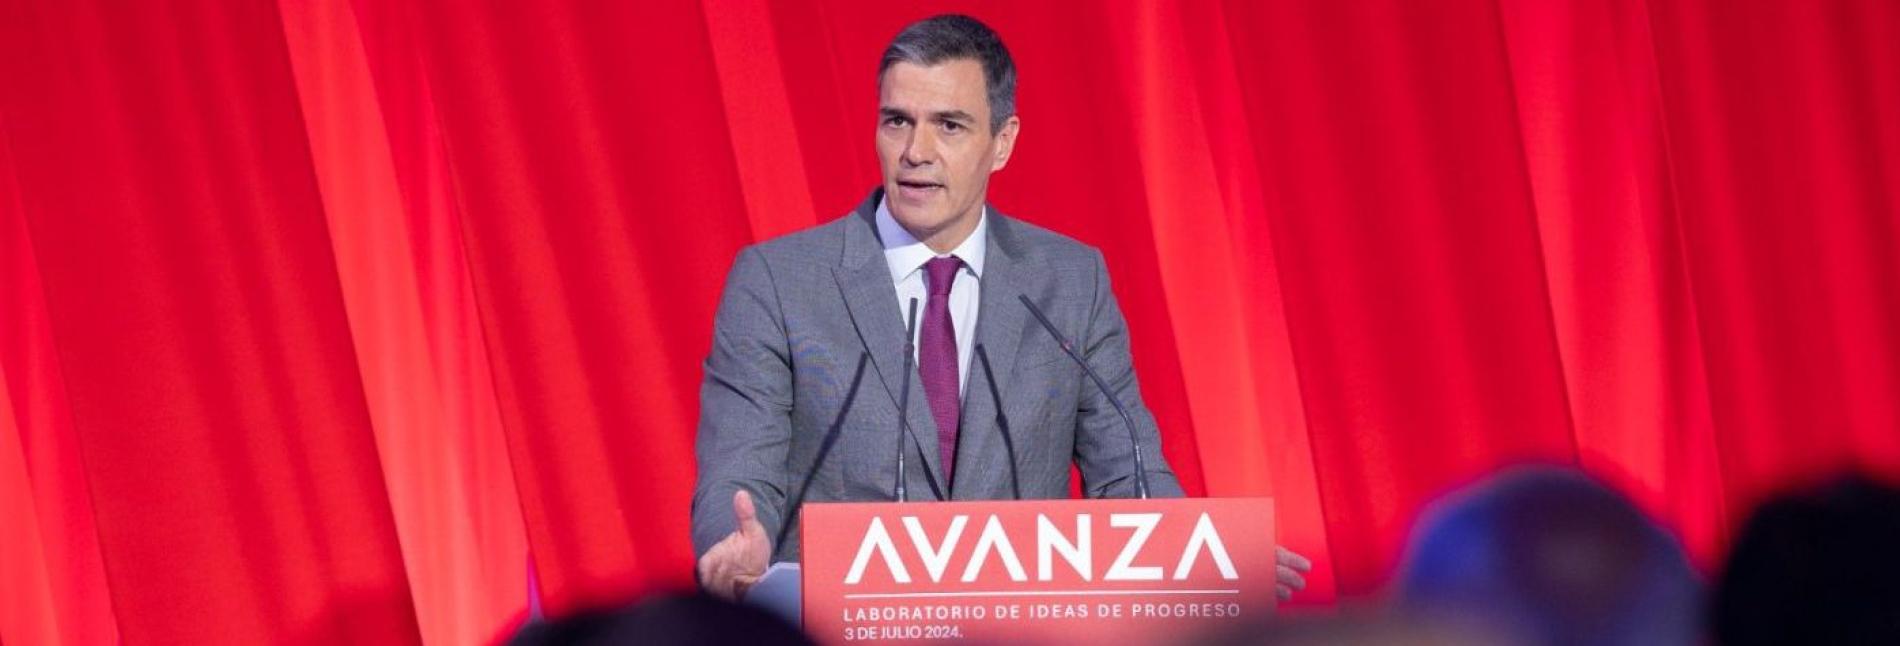 Pedro Sánchez durante la presentación de la Fundación Avanza